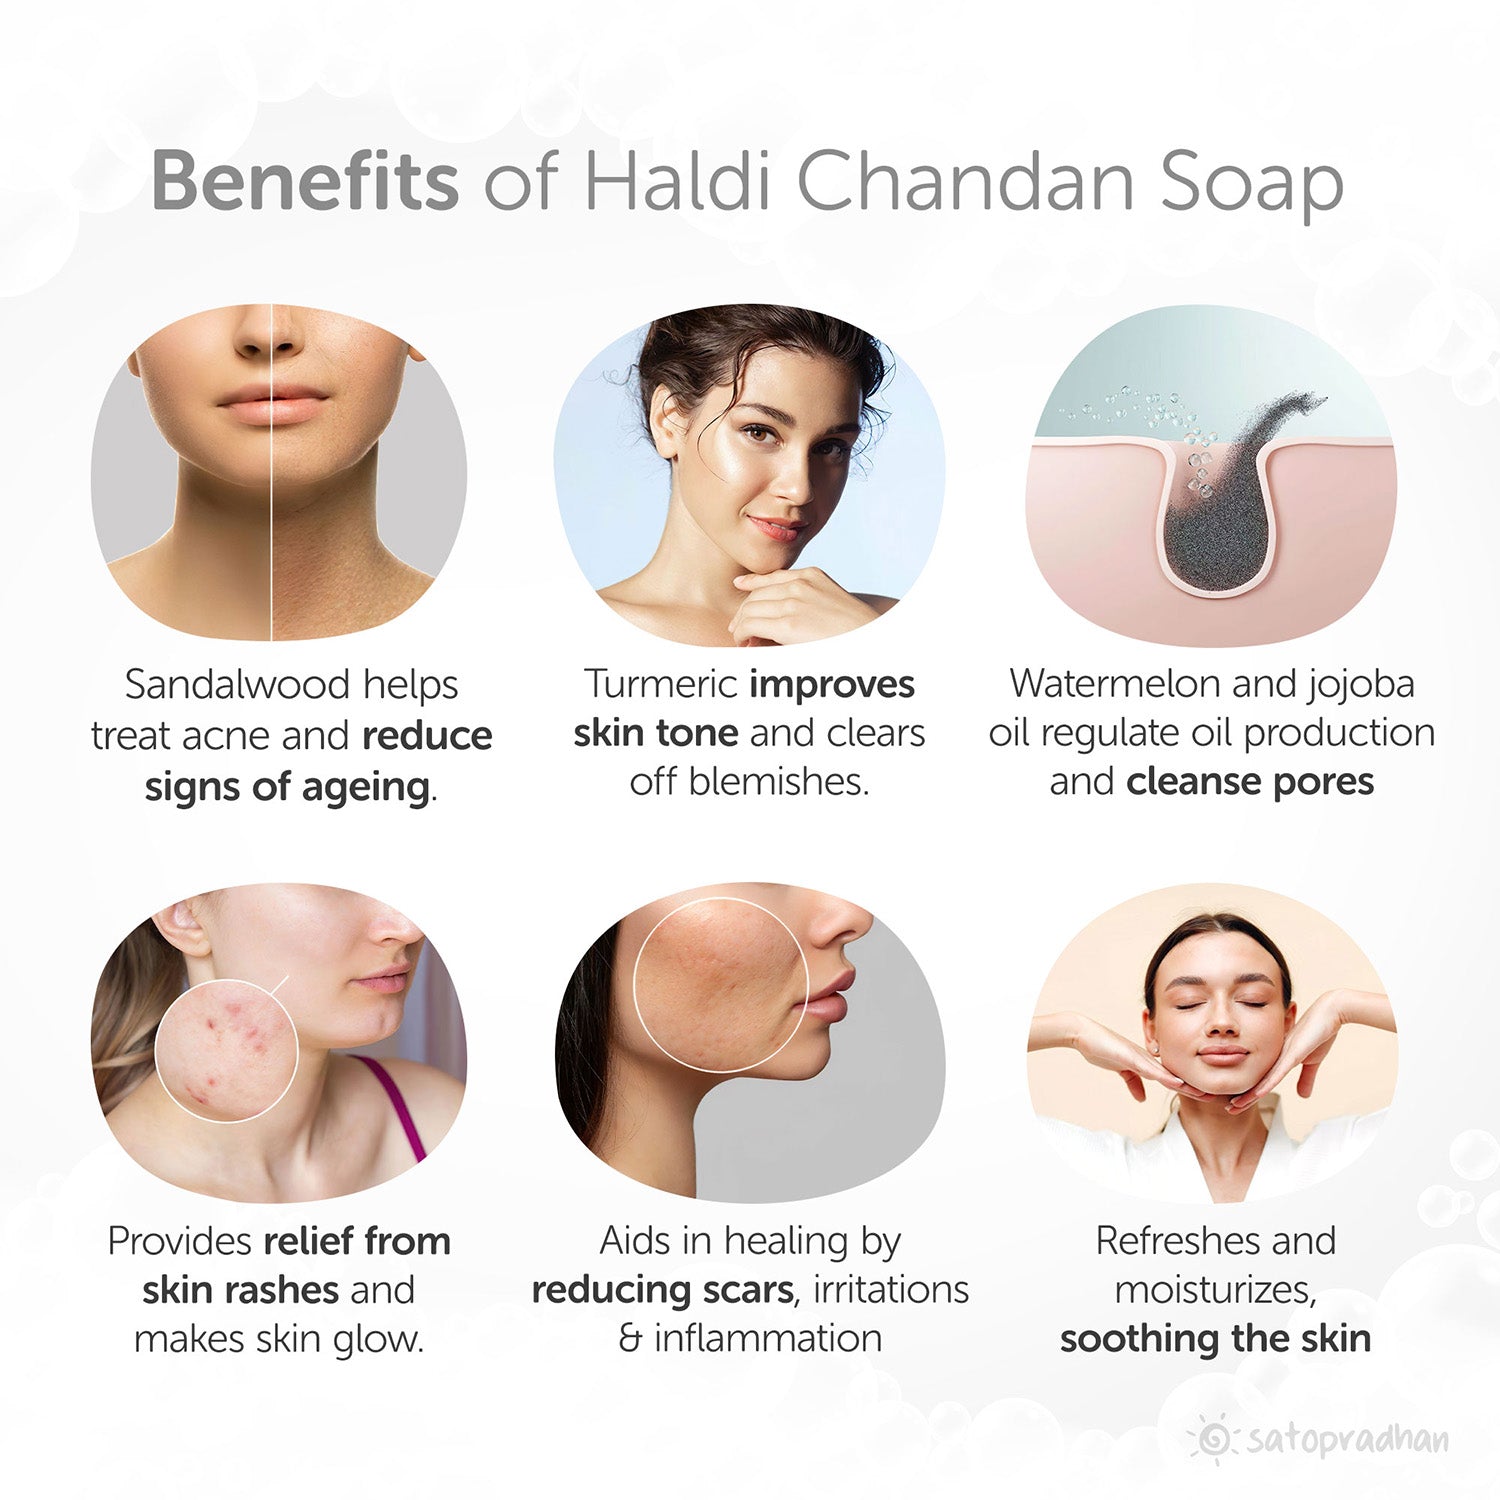 Anti-Ageing Haldi Chandan Soap 100g - Cold Processed Handmade Organic Vegan & Natural Soap